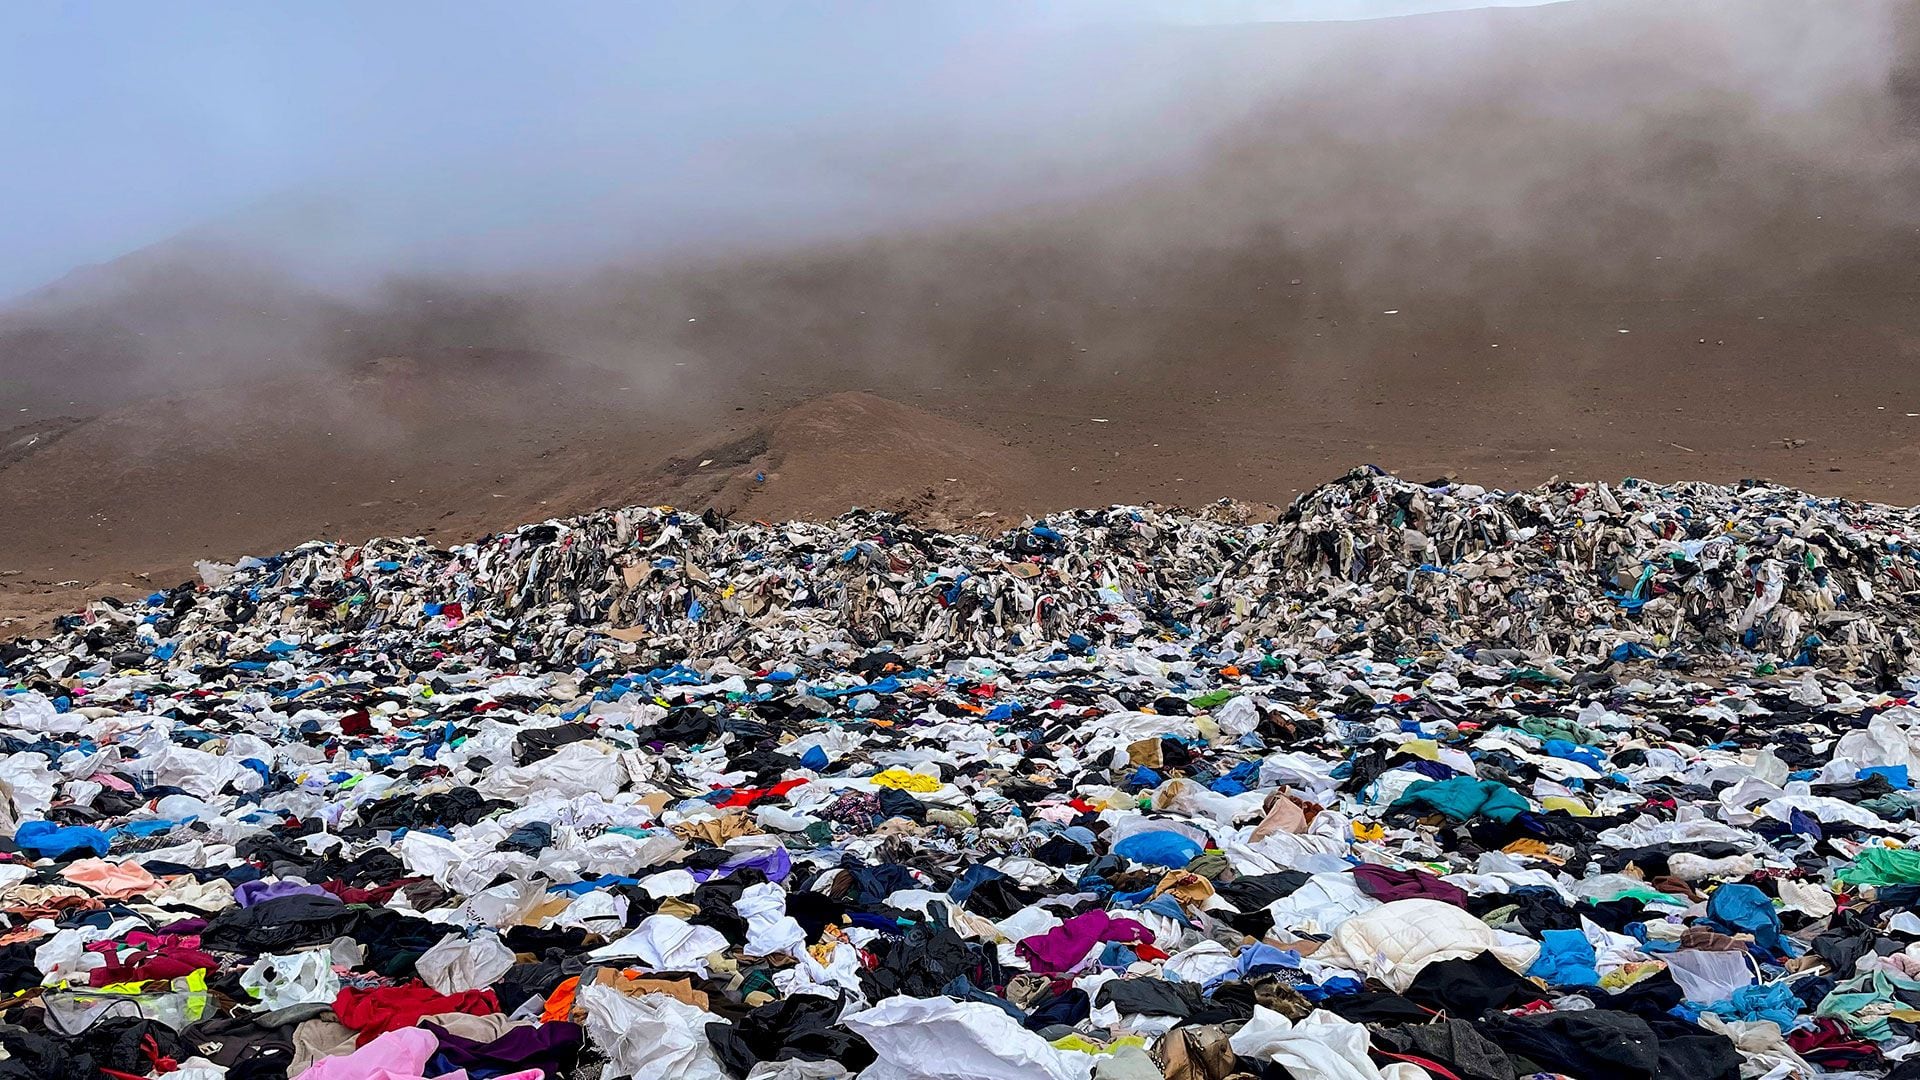 Montaña de ropa descartable en el desierto de Atacama, Chile